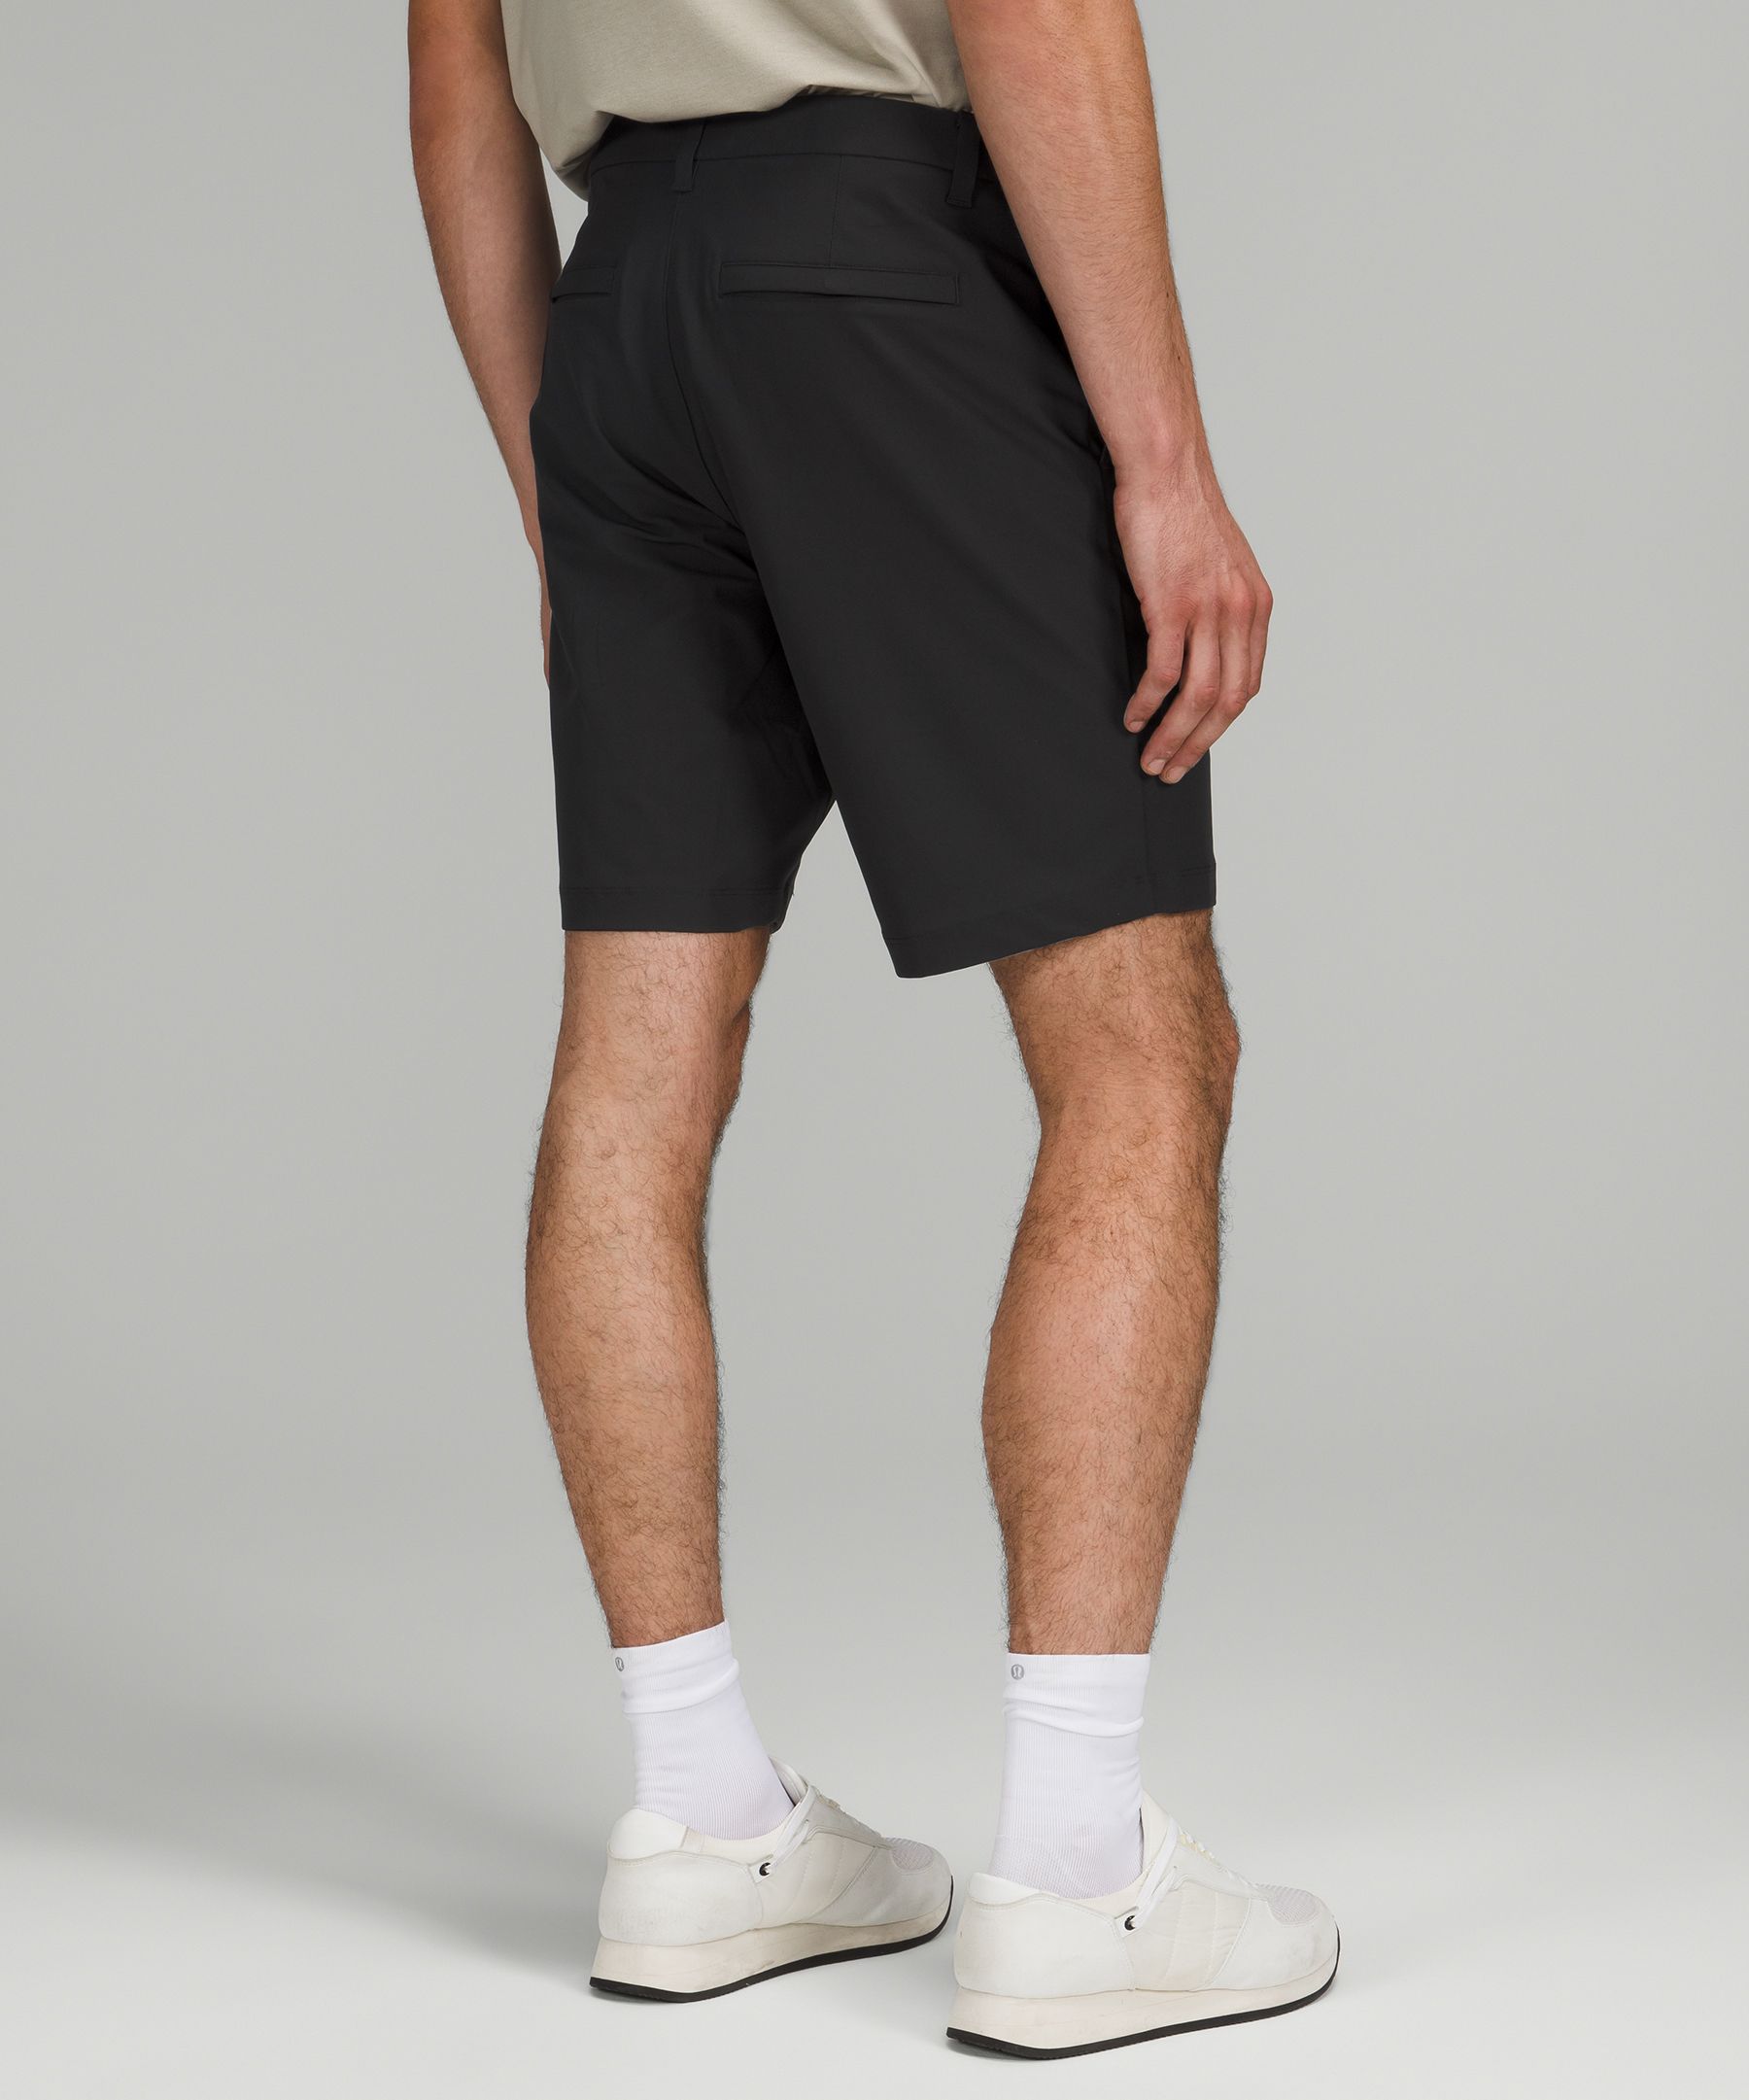 abc shorts lululemon